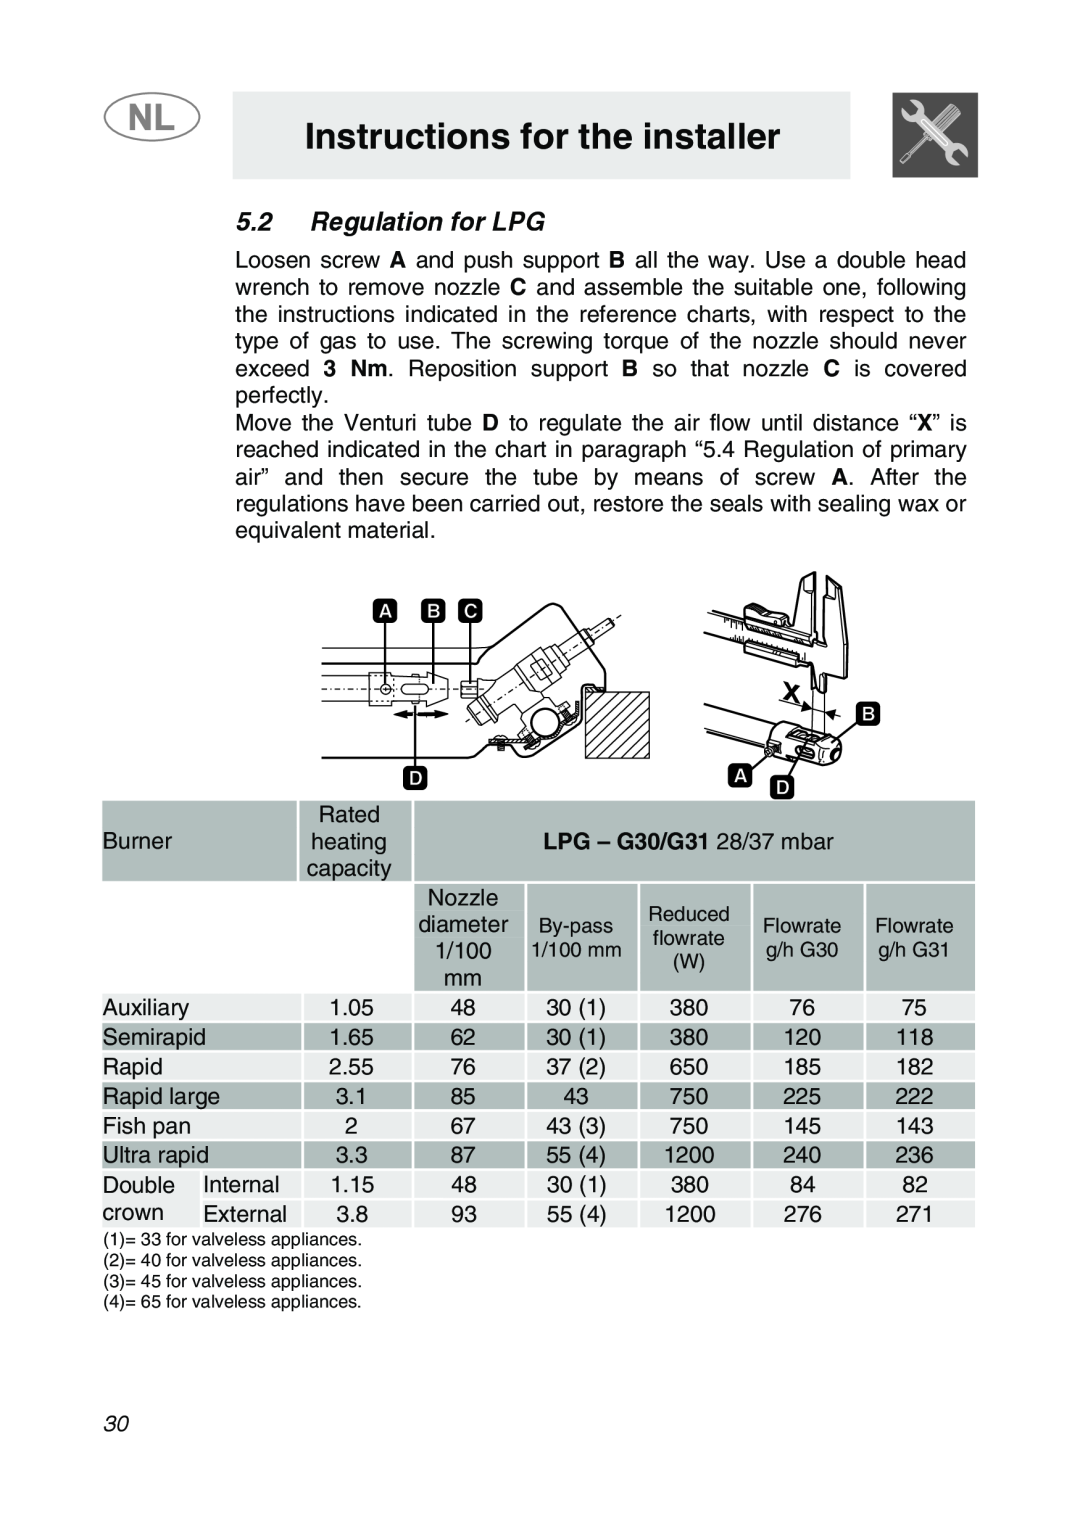 Smeg GKCO755, GKC755 manual 5.2Regulation for LPG, LPG - G30/G31 28/37 mbar, Instructions for the installer 